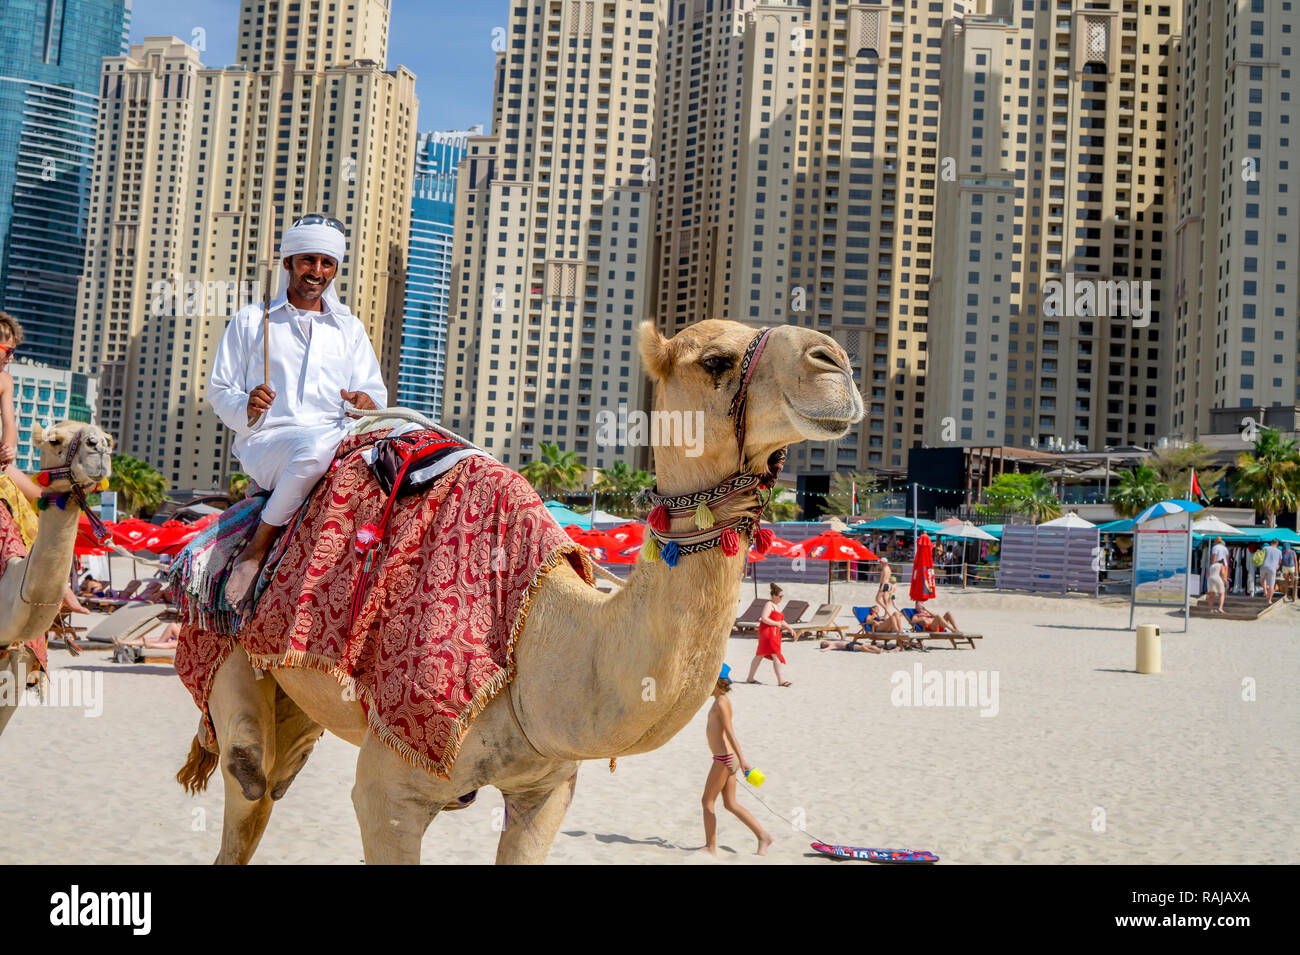 Dubai,UAE / 10.31.2018 : autentic camel ride on the jumeirah JBR beach with an arabian man on the camel Stock Photo